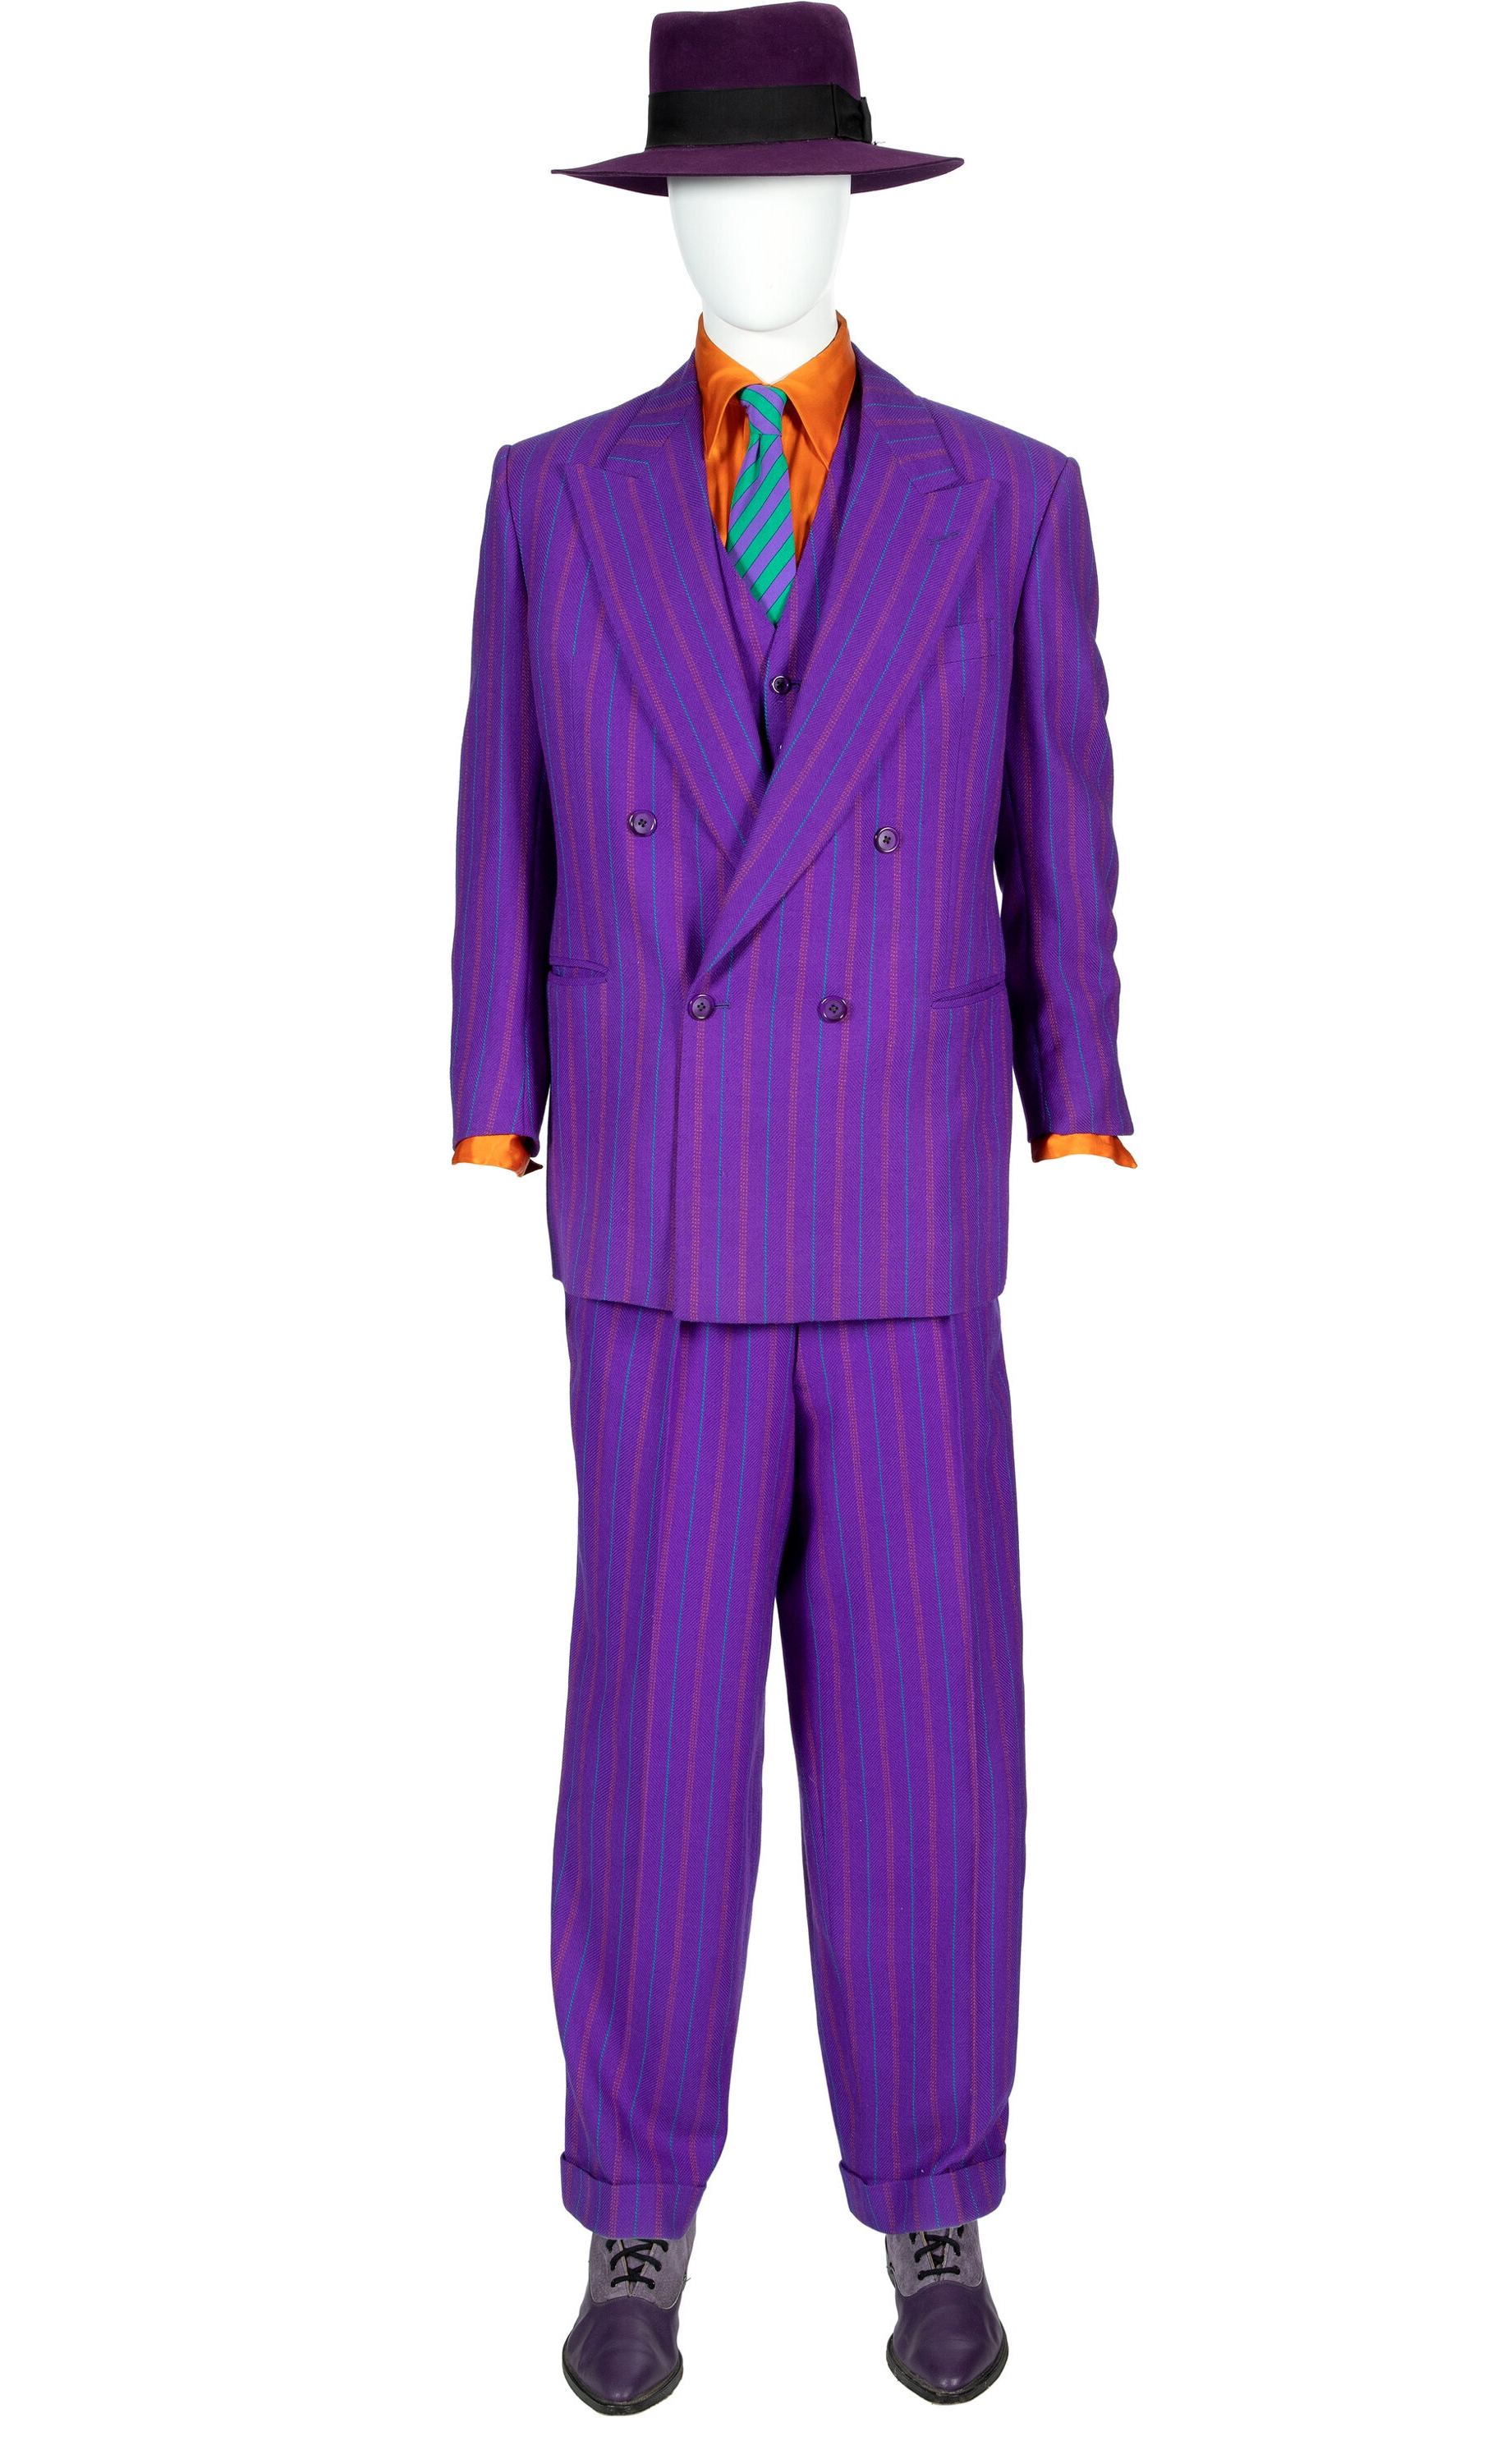 Purple suit worn by Jack Nicholson as The Joker in ‘Batman,’ $125,000